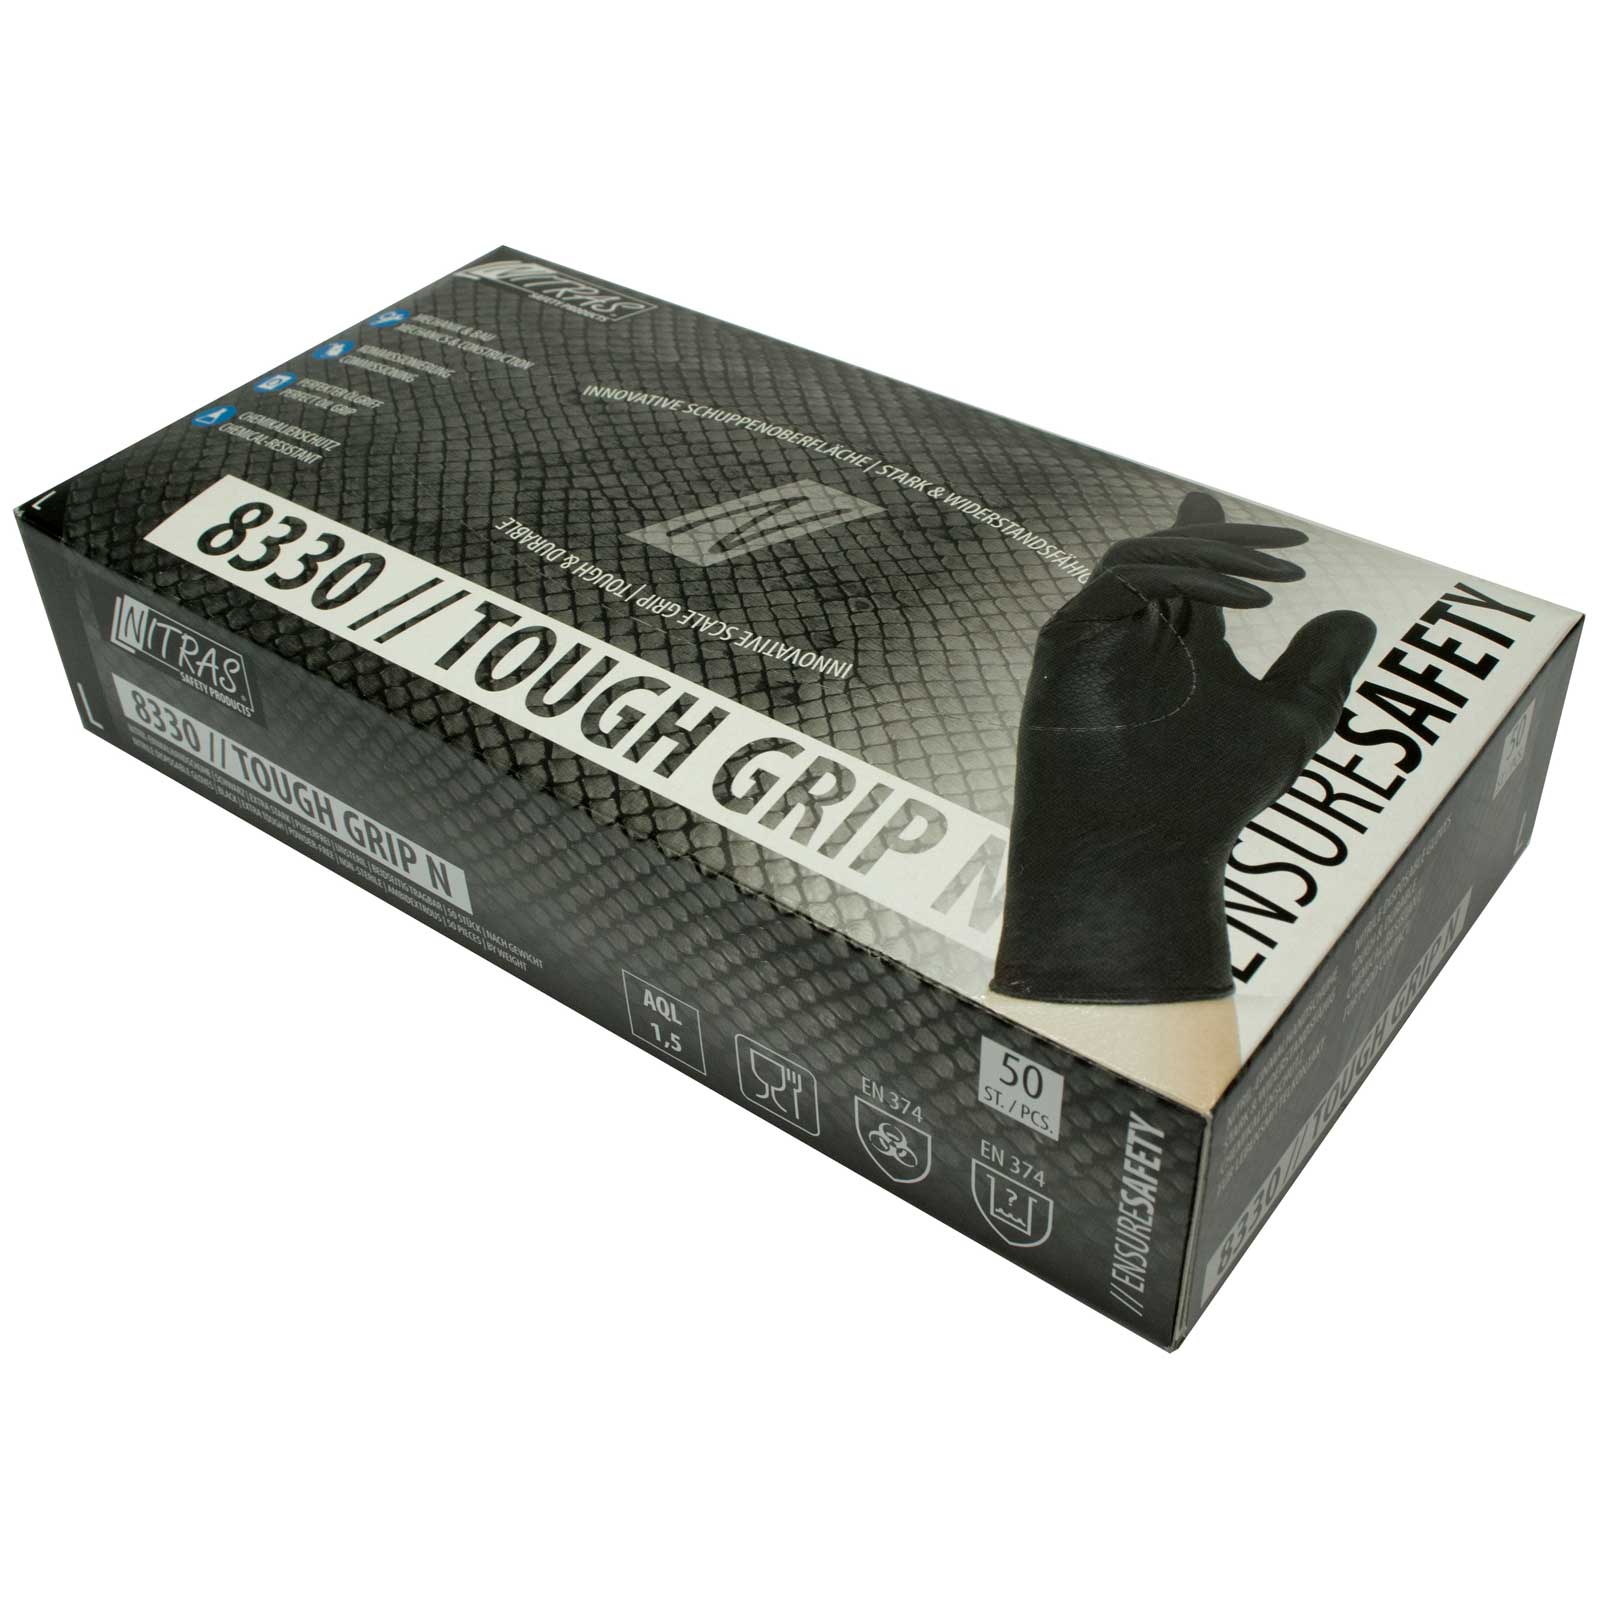 NITRAS Einmalhandschuhe Nitril Tough Grip N 8330 - puderfrei - Box à 50 Stück Größe:8 von NITRAS